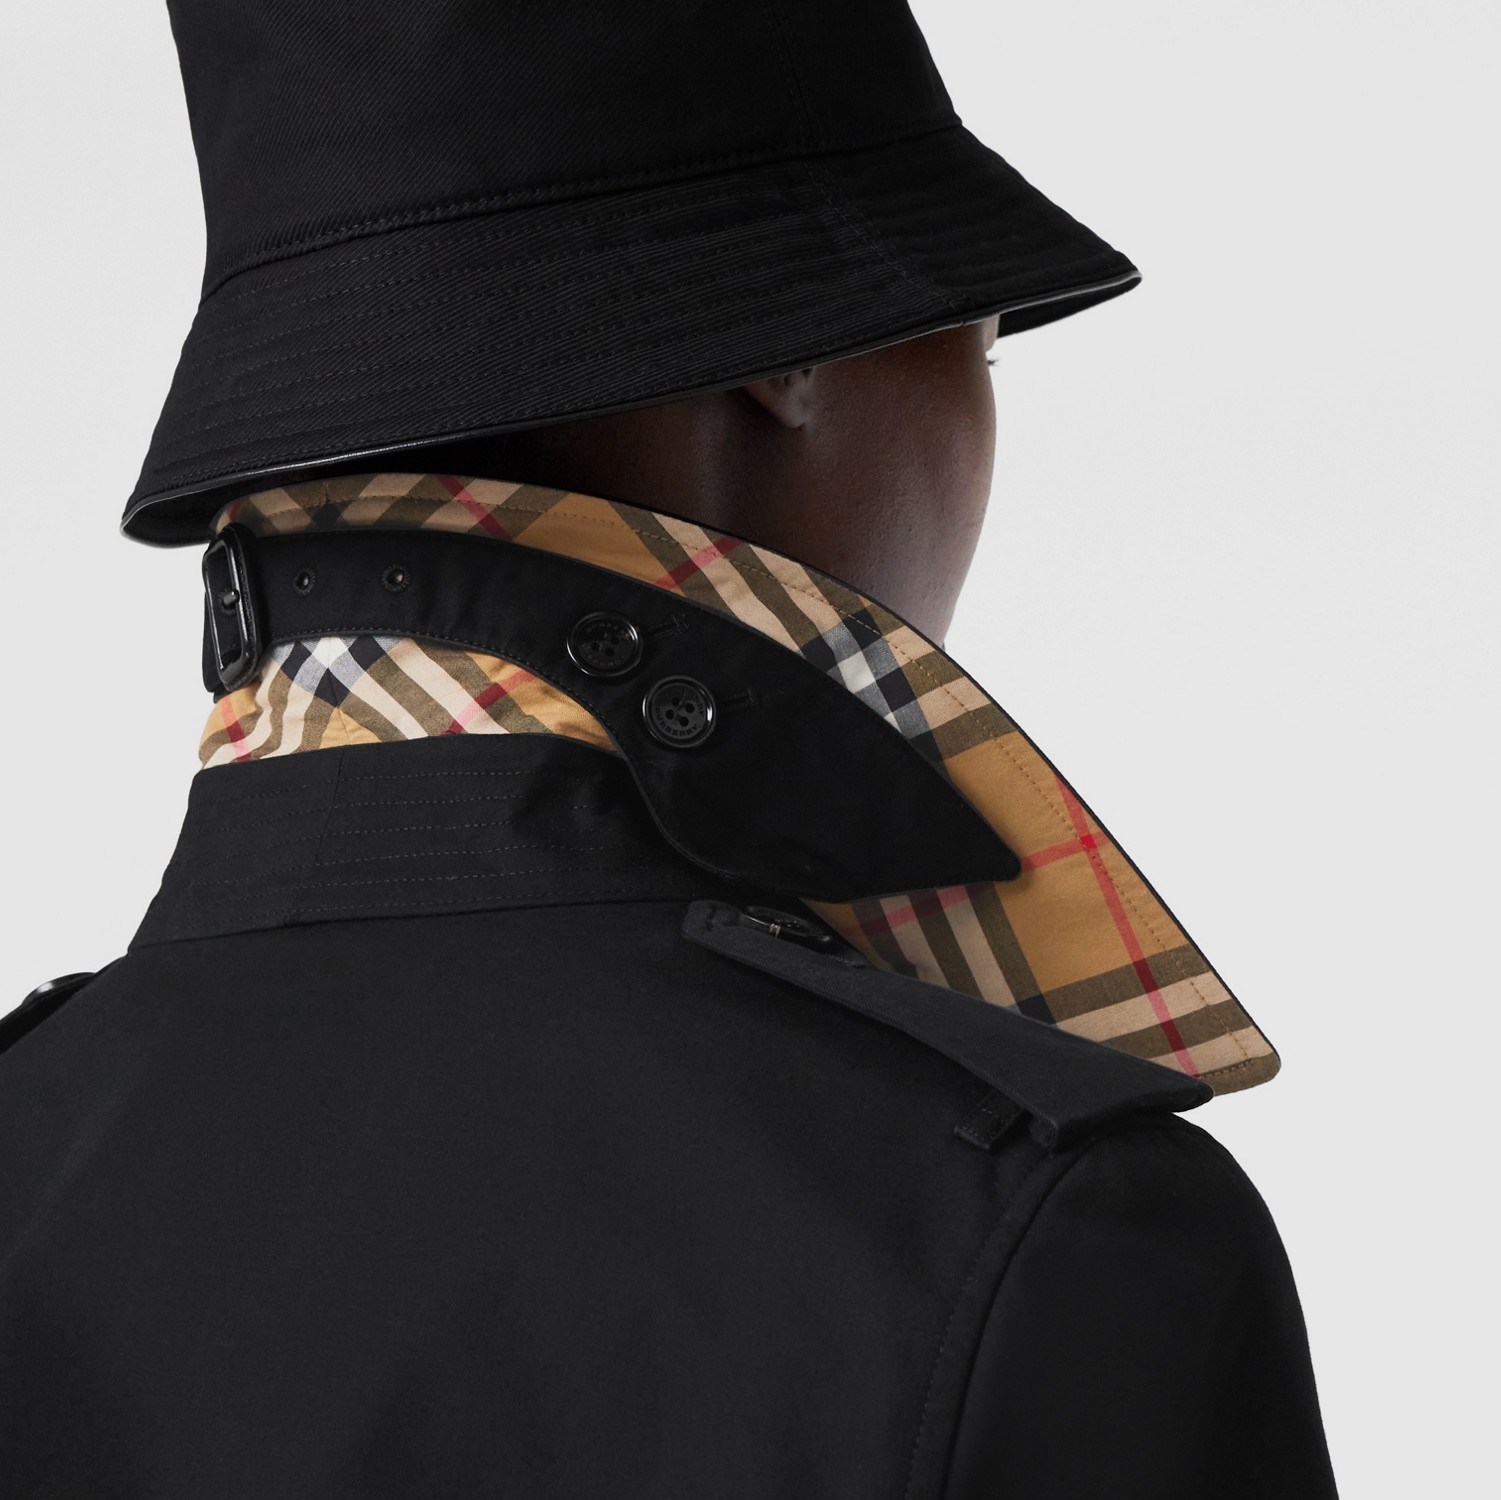 肯辛顿版型 - 中长款 Heritage Trench 风衣 (黑色) - 女士 | Burberry® 博柏利官网